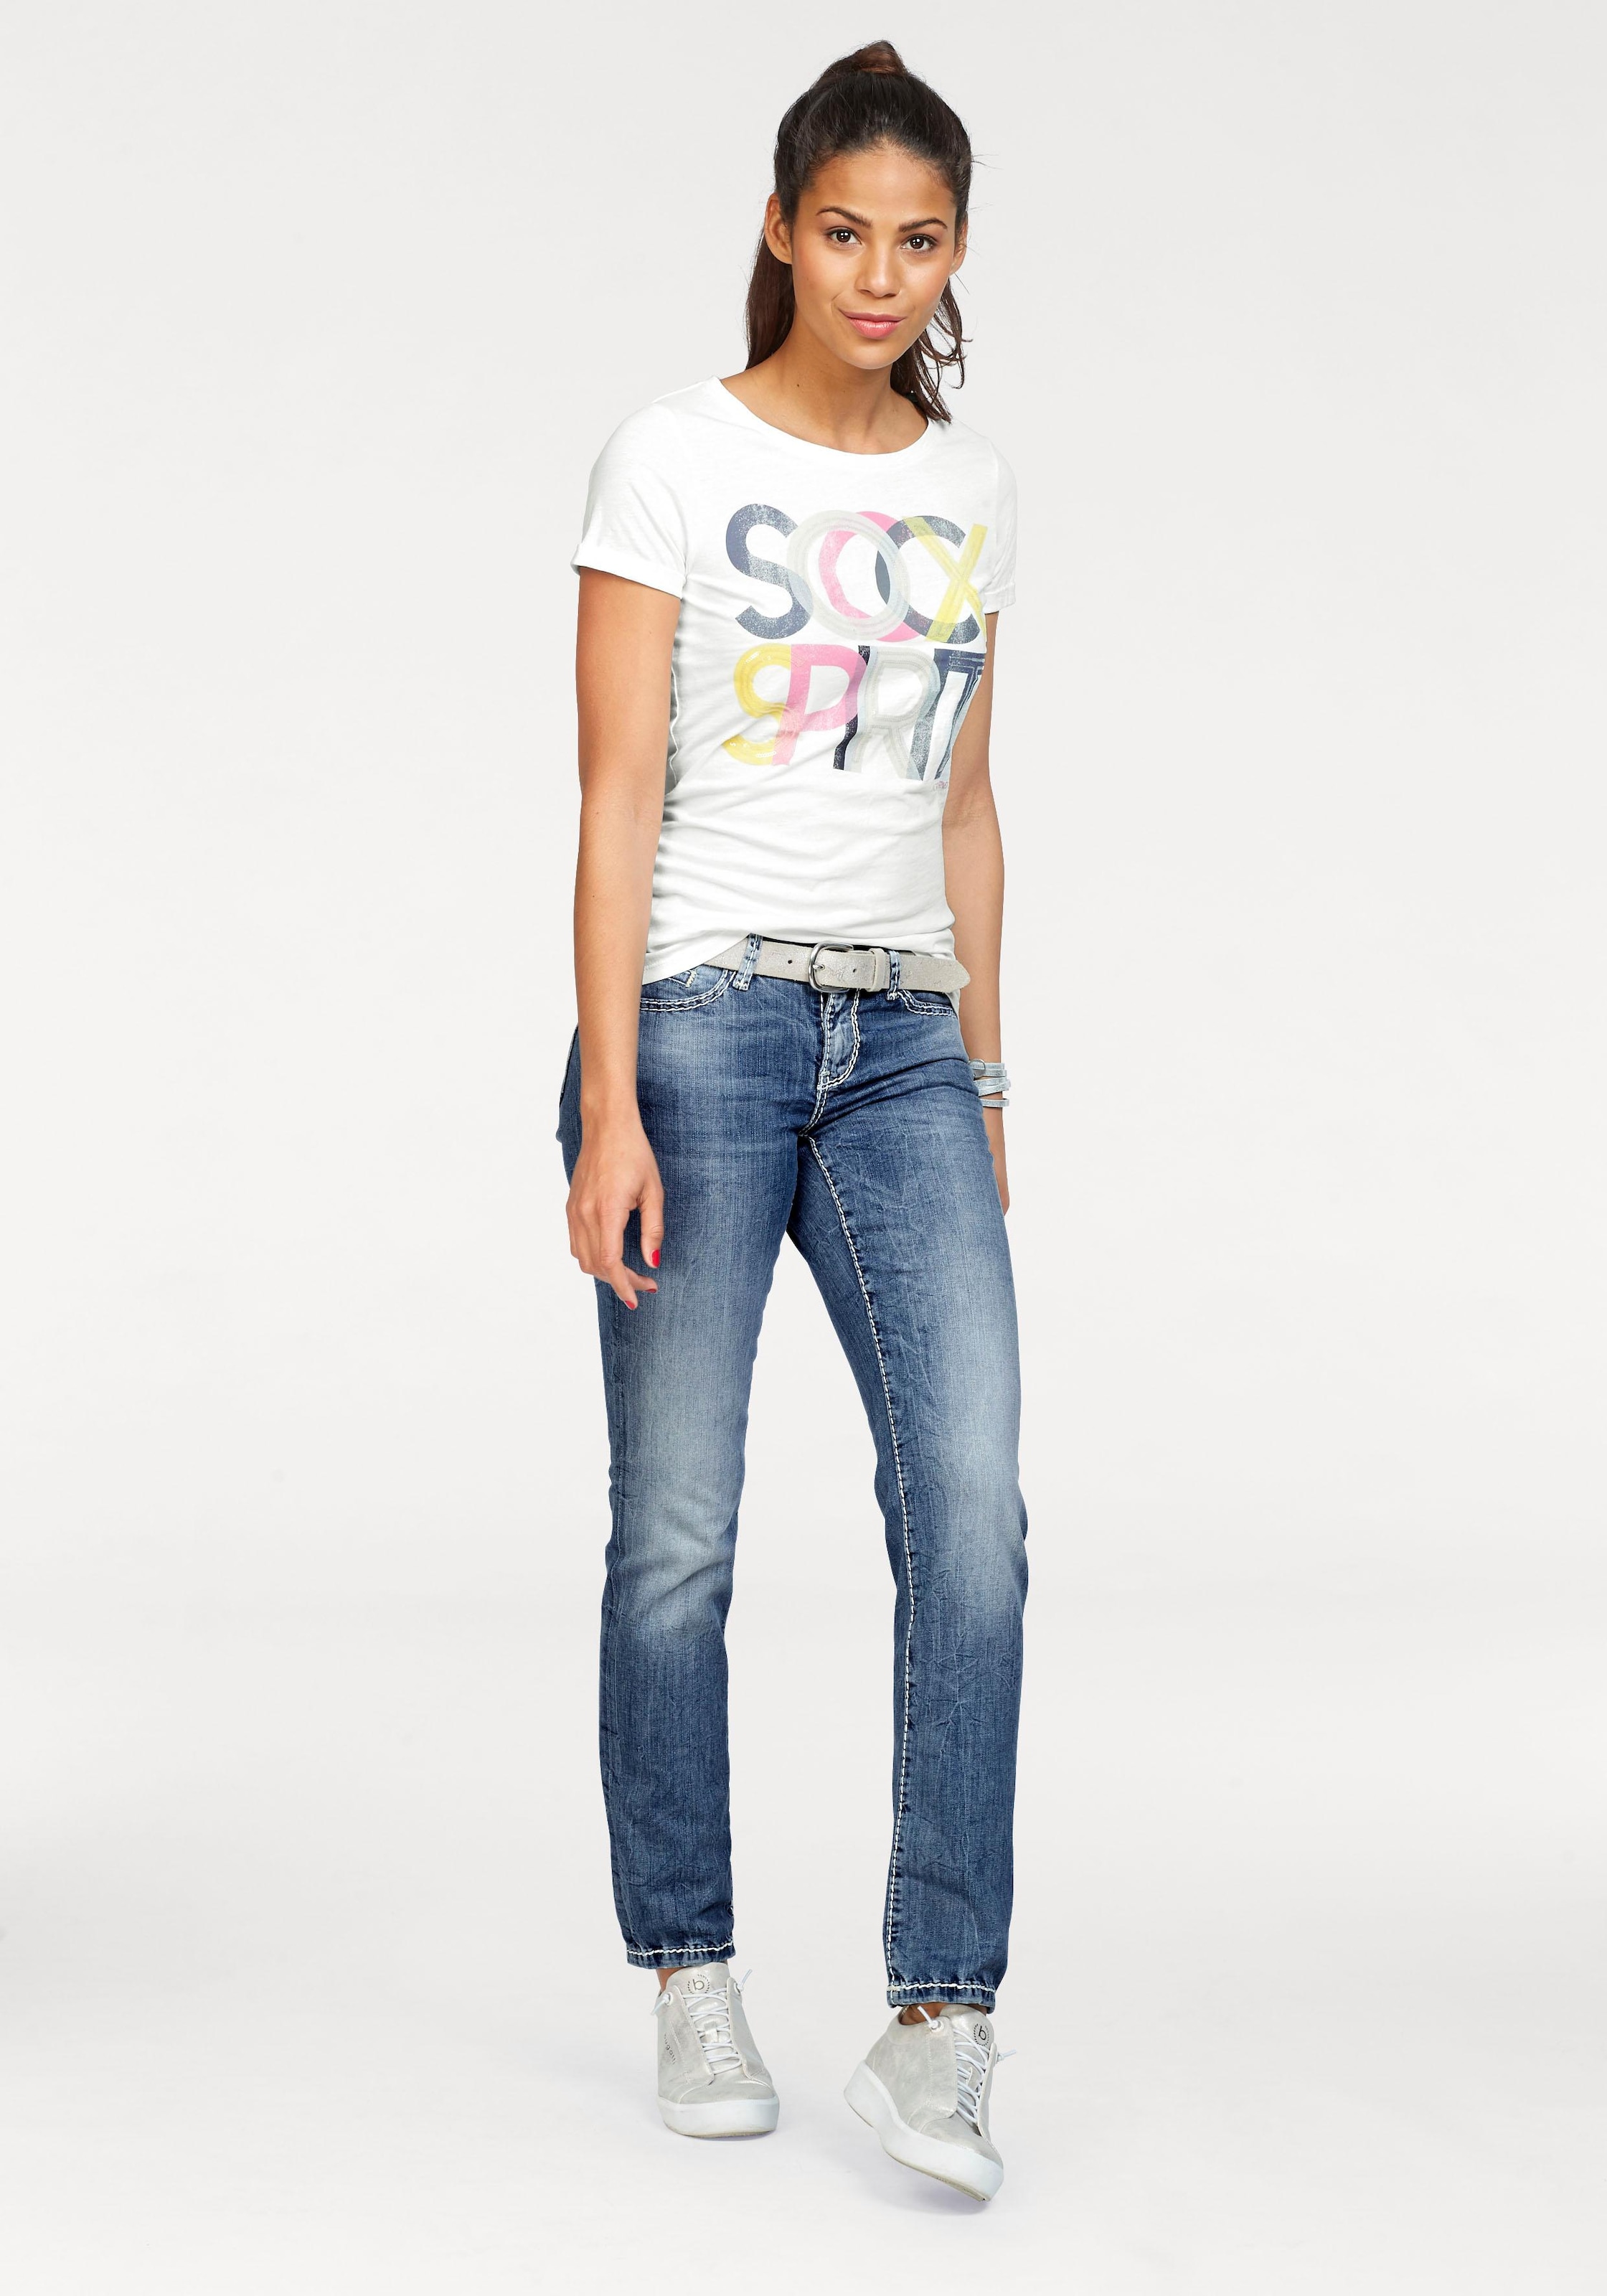 Shop OTTO Online »Romy«, Jeans SOCCX Gerade markanten im mit Dekosteppnähten